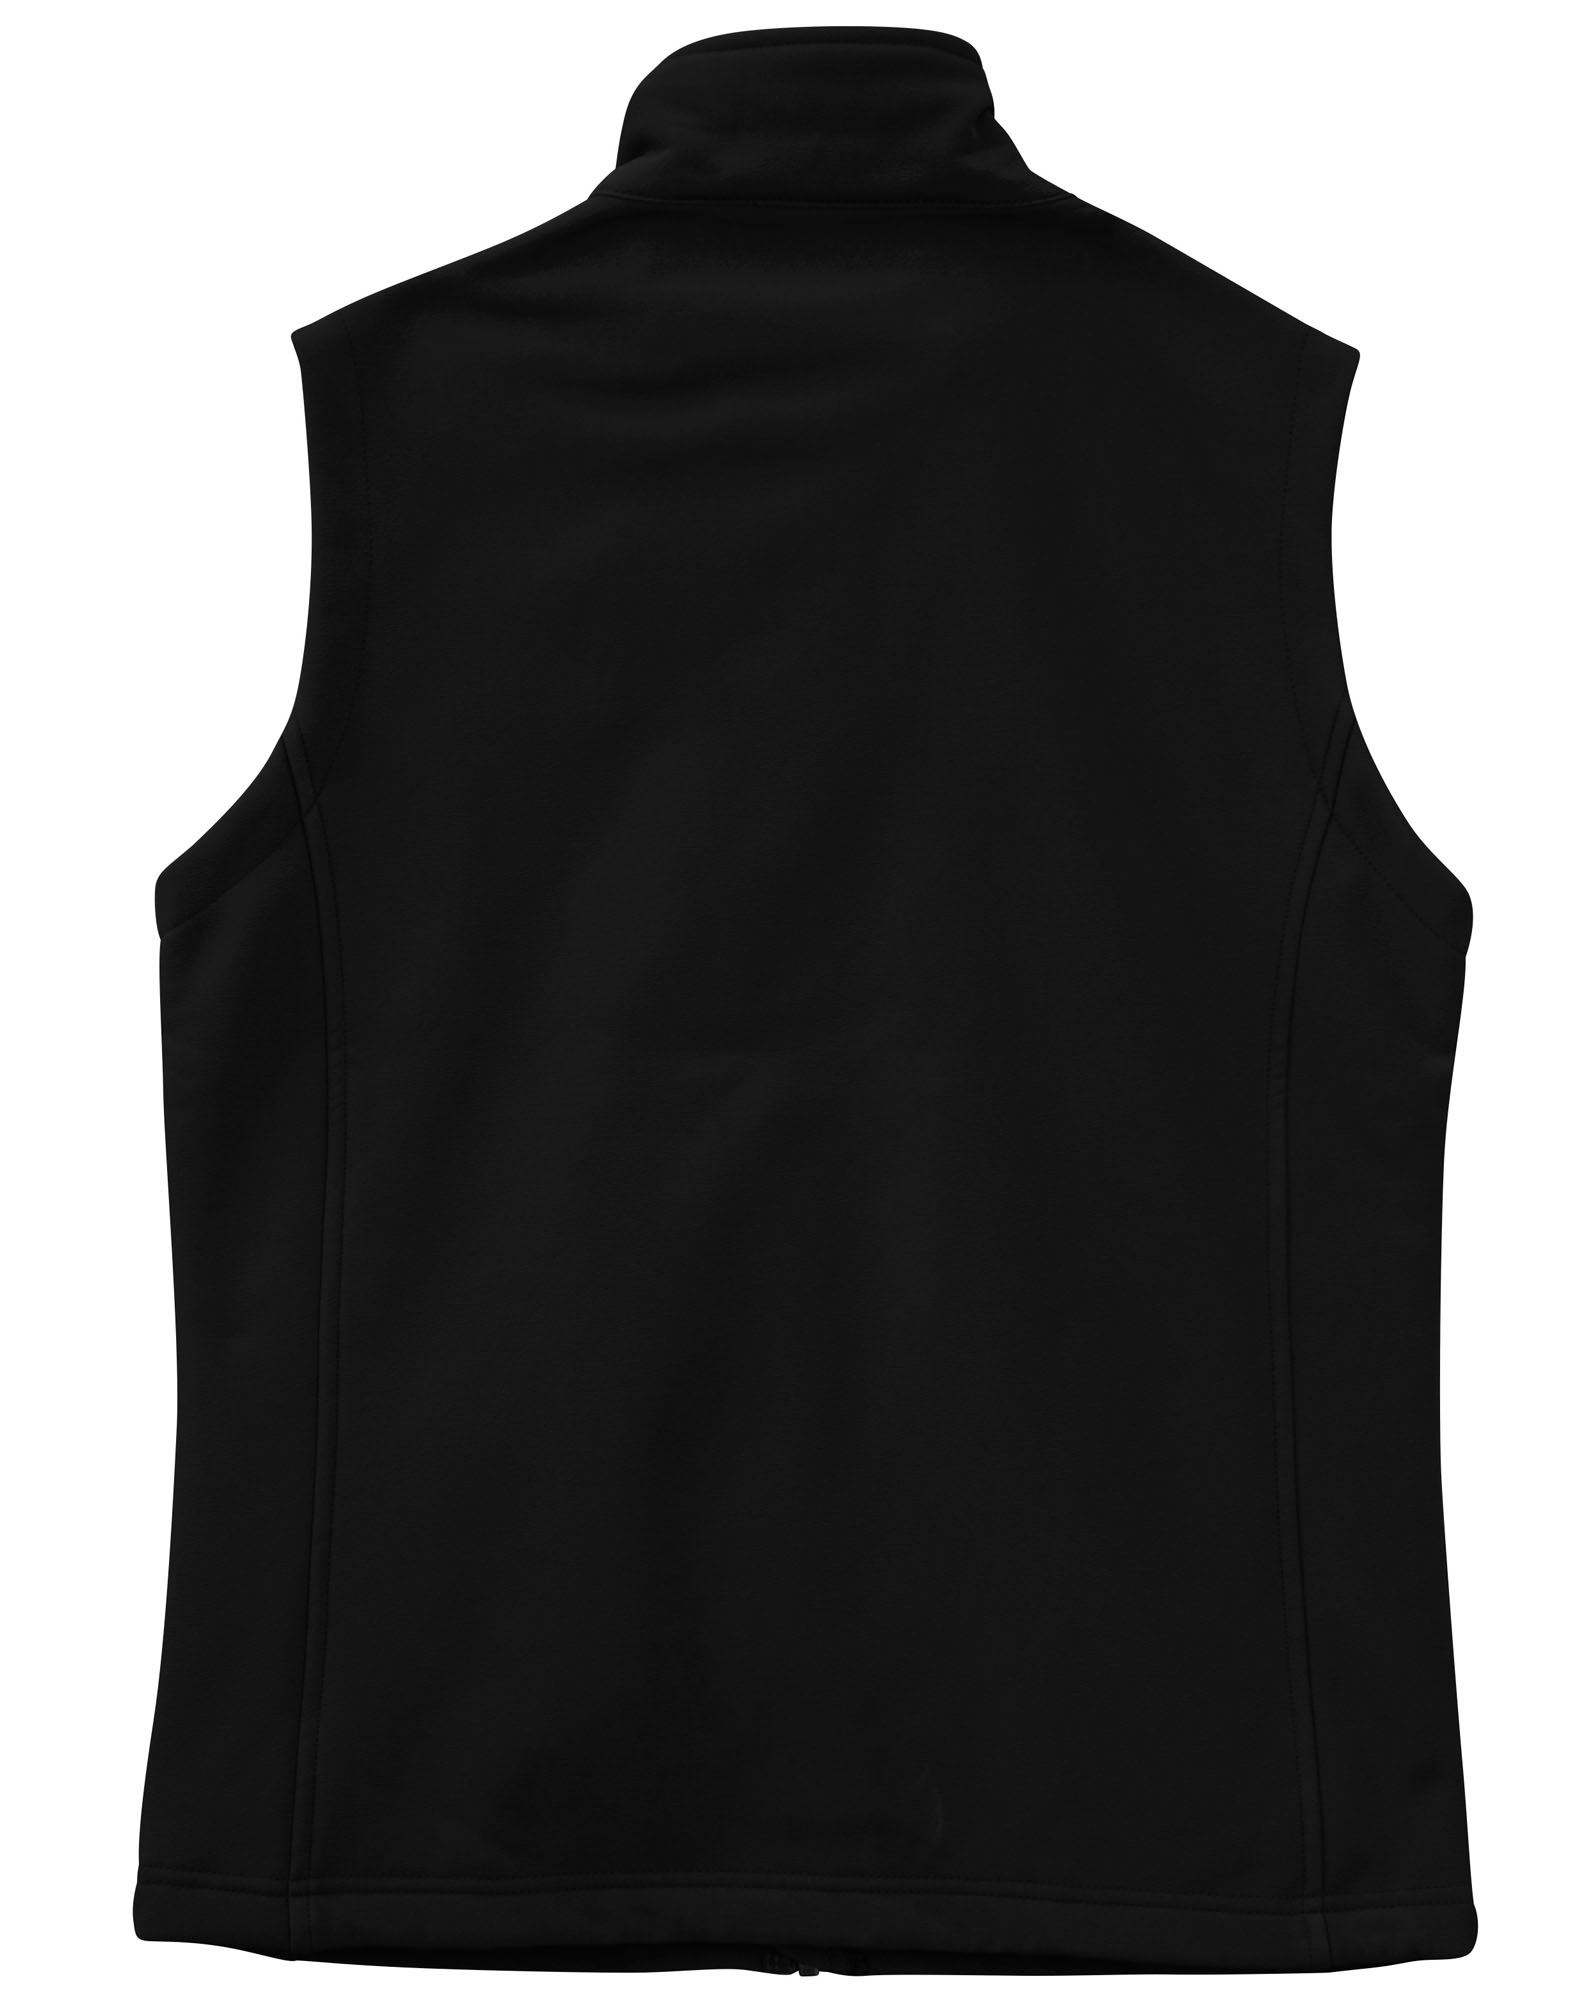 Men's and Women's Softshell Hi-Tech Vest - Black - Uniform Edit